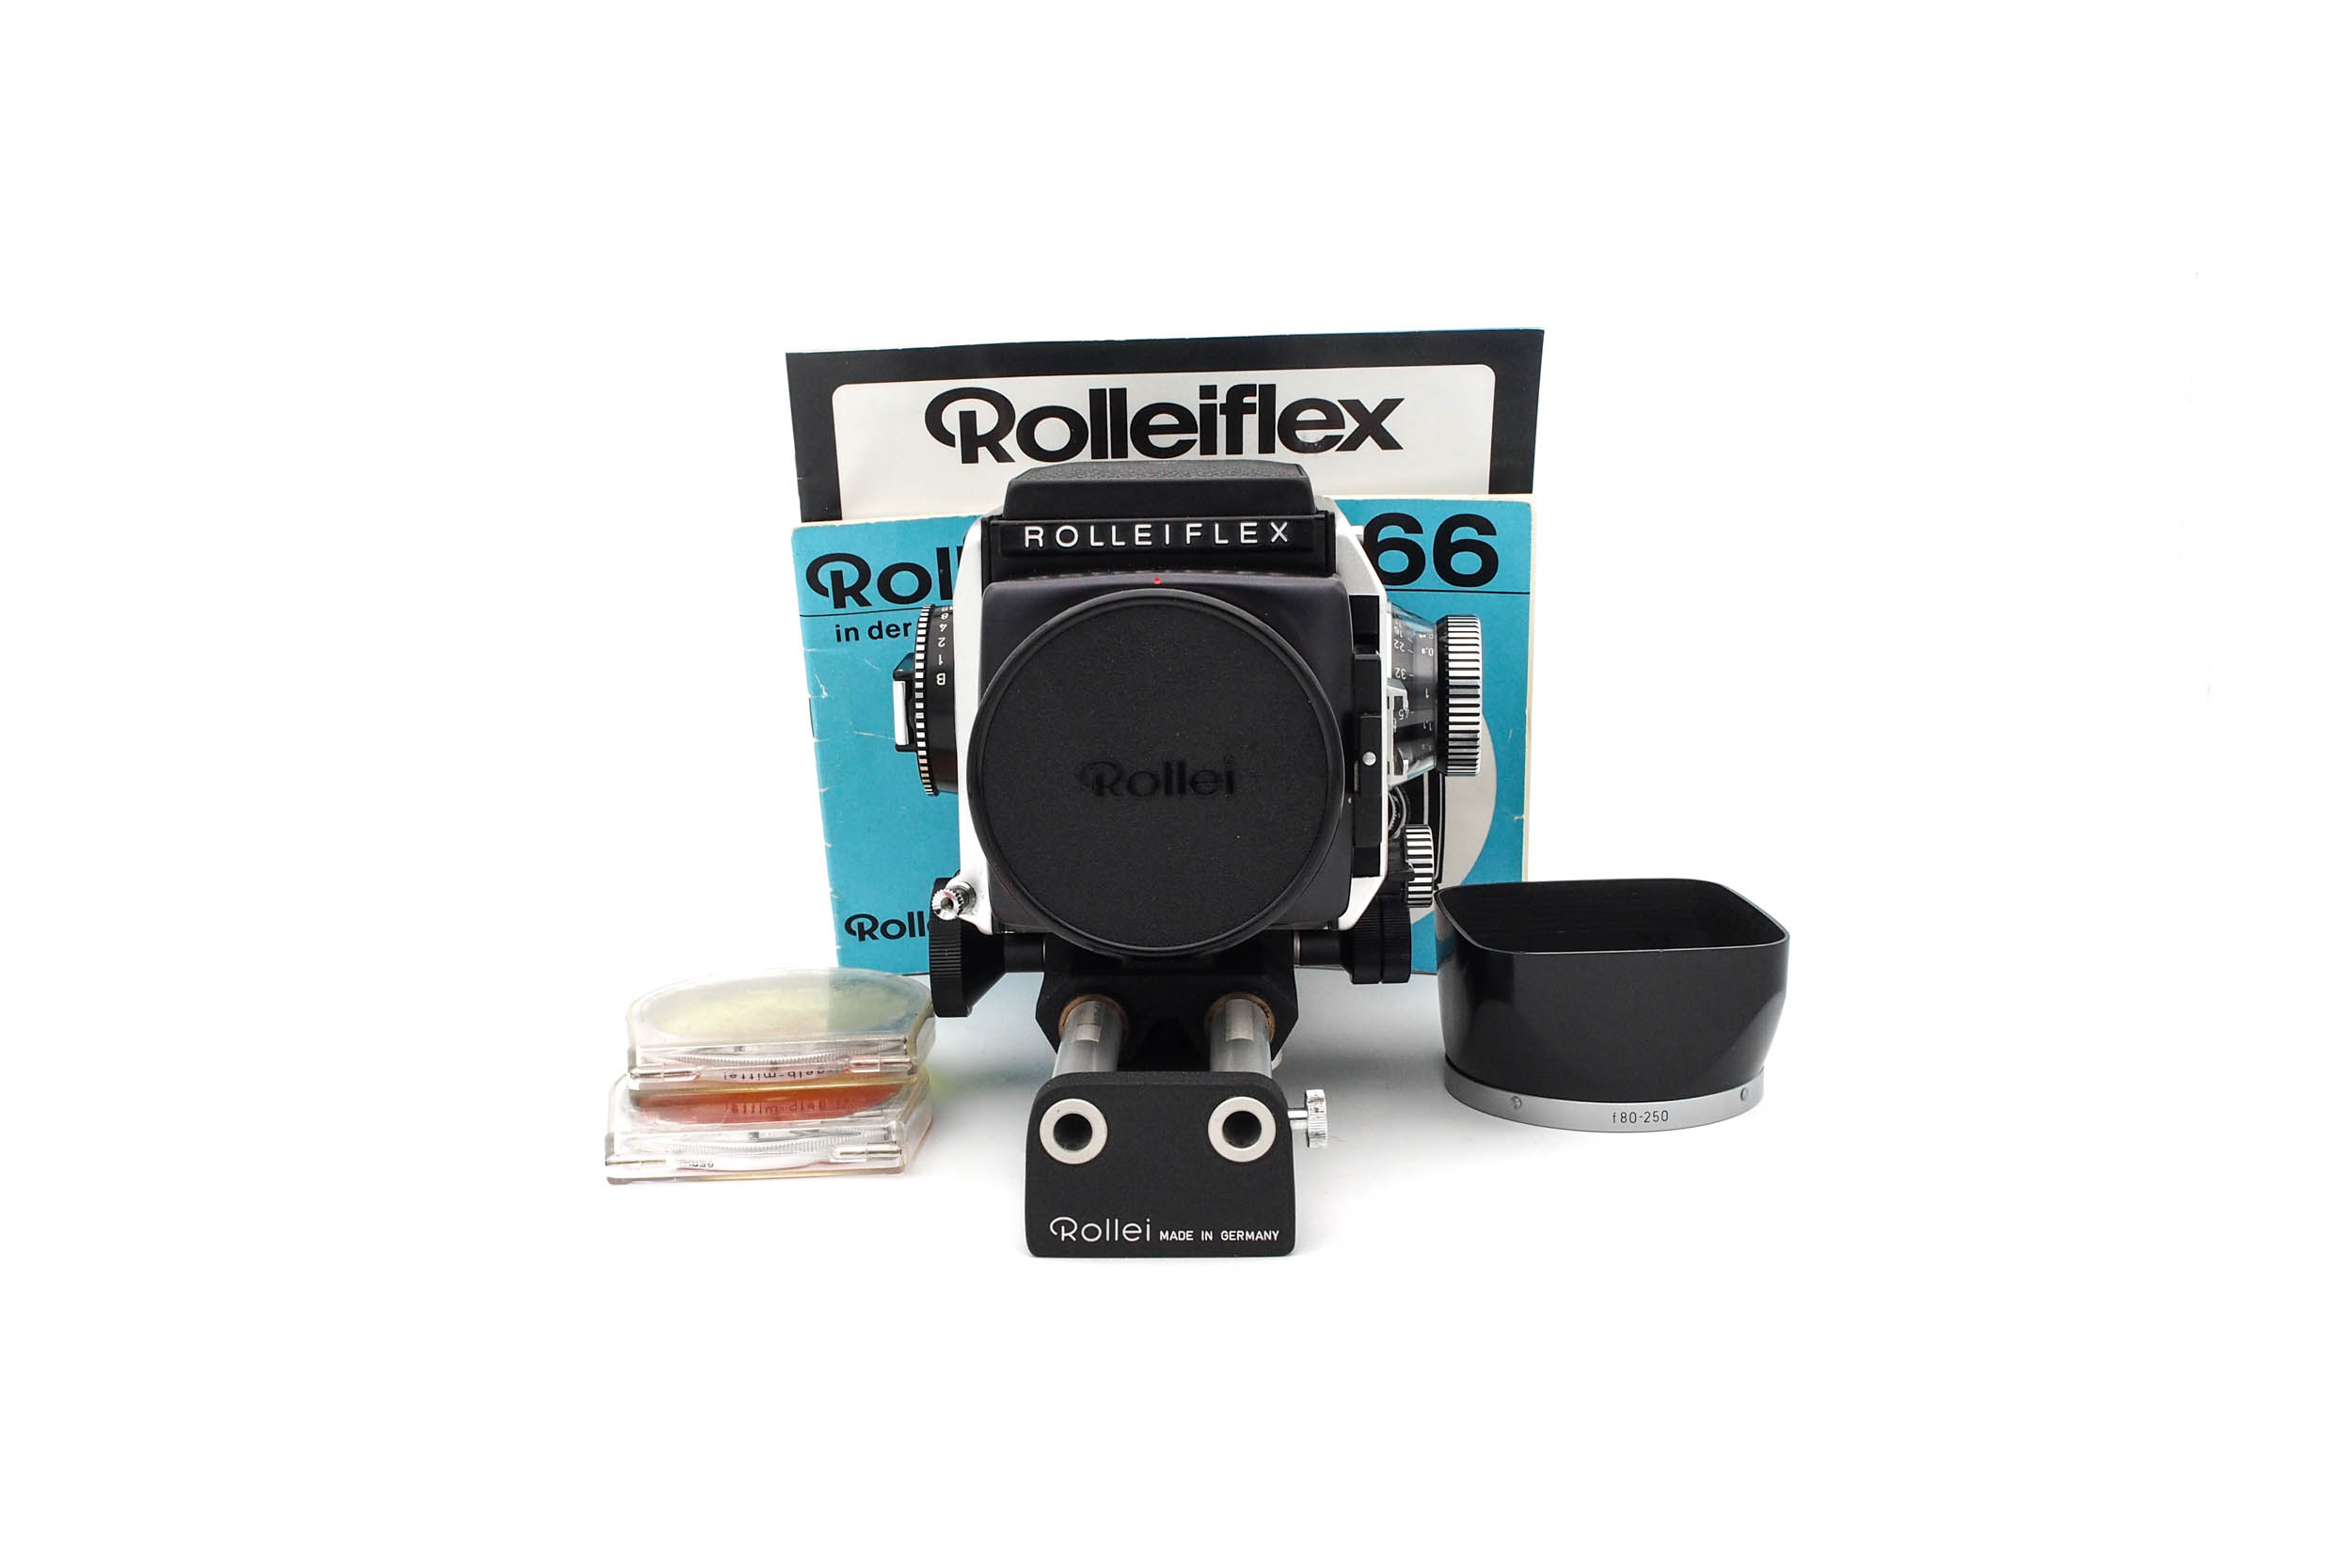 Rolleiflex SL66 Set